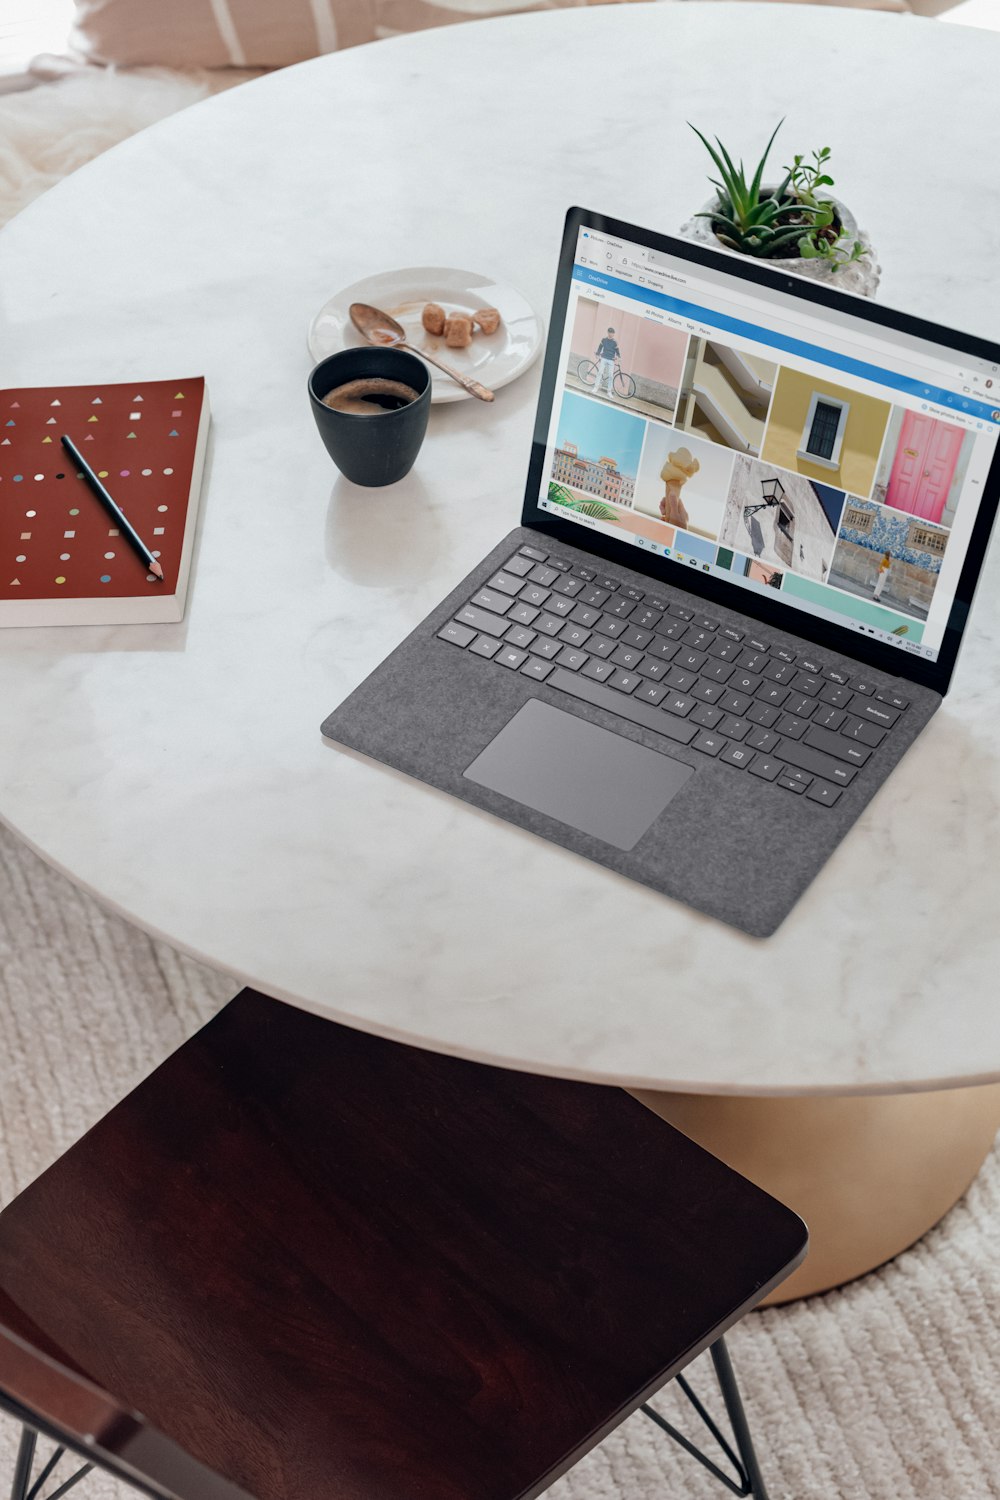 Foto de portátil Microsoft Surface de color plateado sobre una mesa redonda  blanca – Imagen gratuita en Unsplash